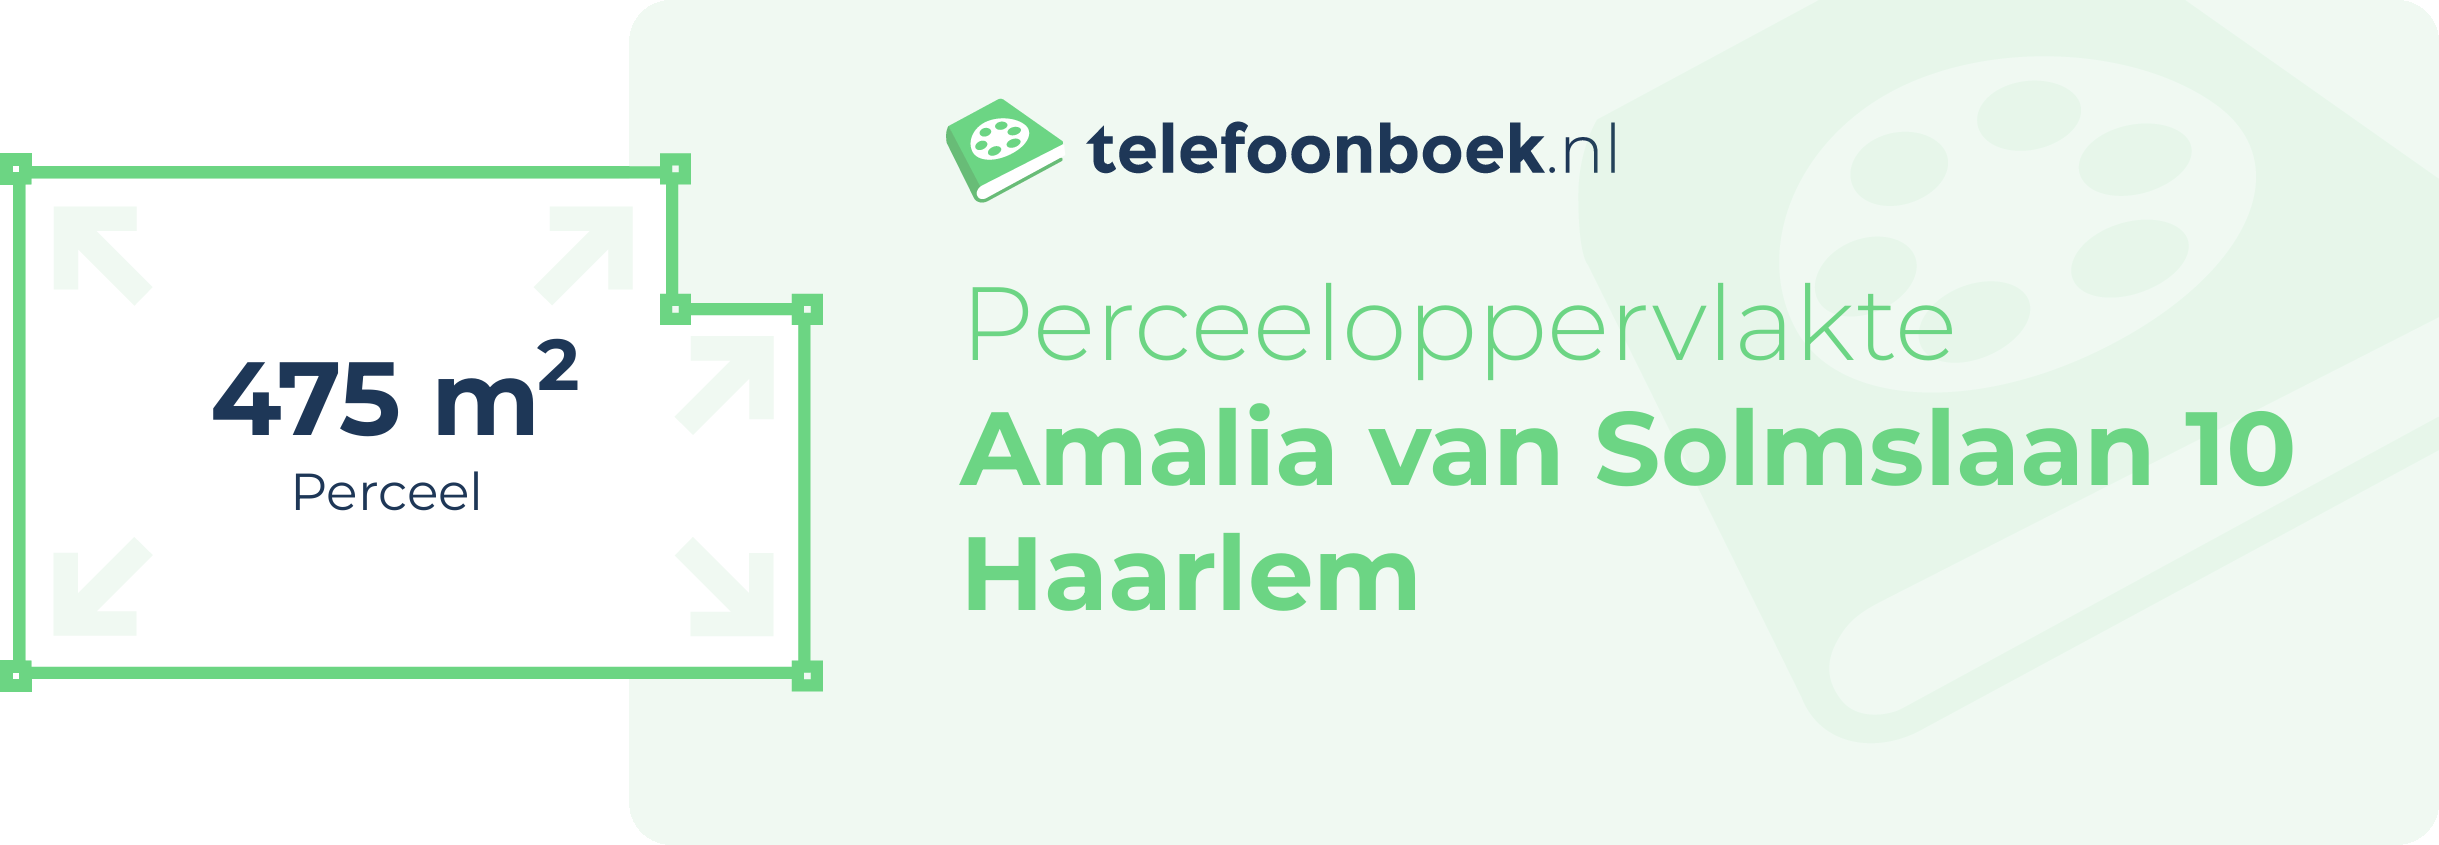 Perceeloppervlakte Amalia Van Solmslaan 10 Haarlem